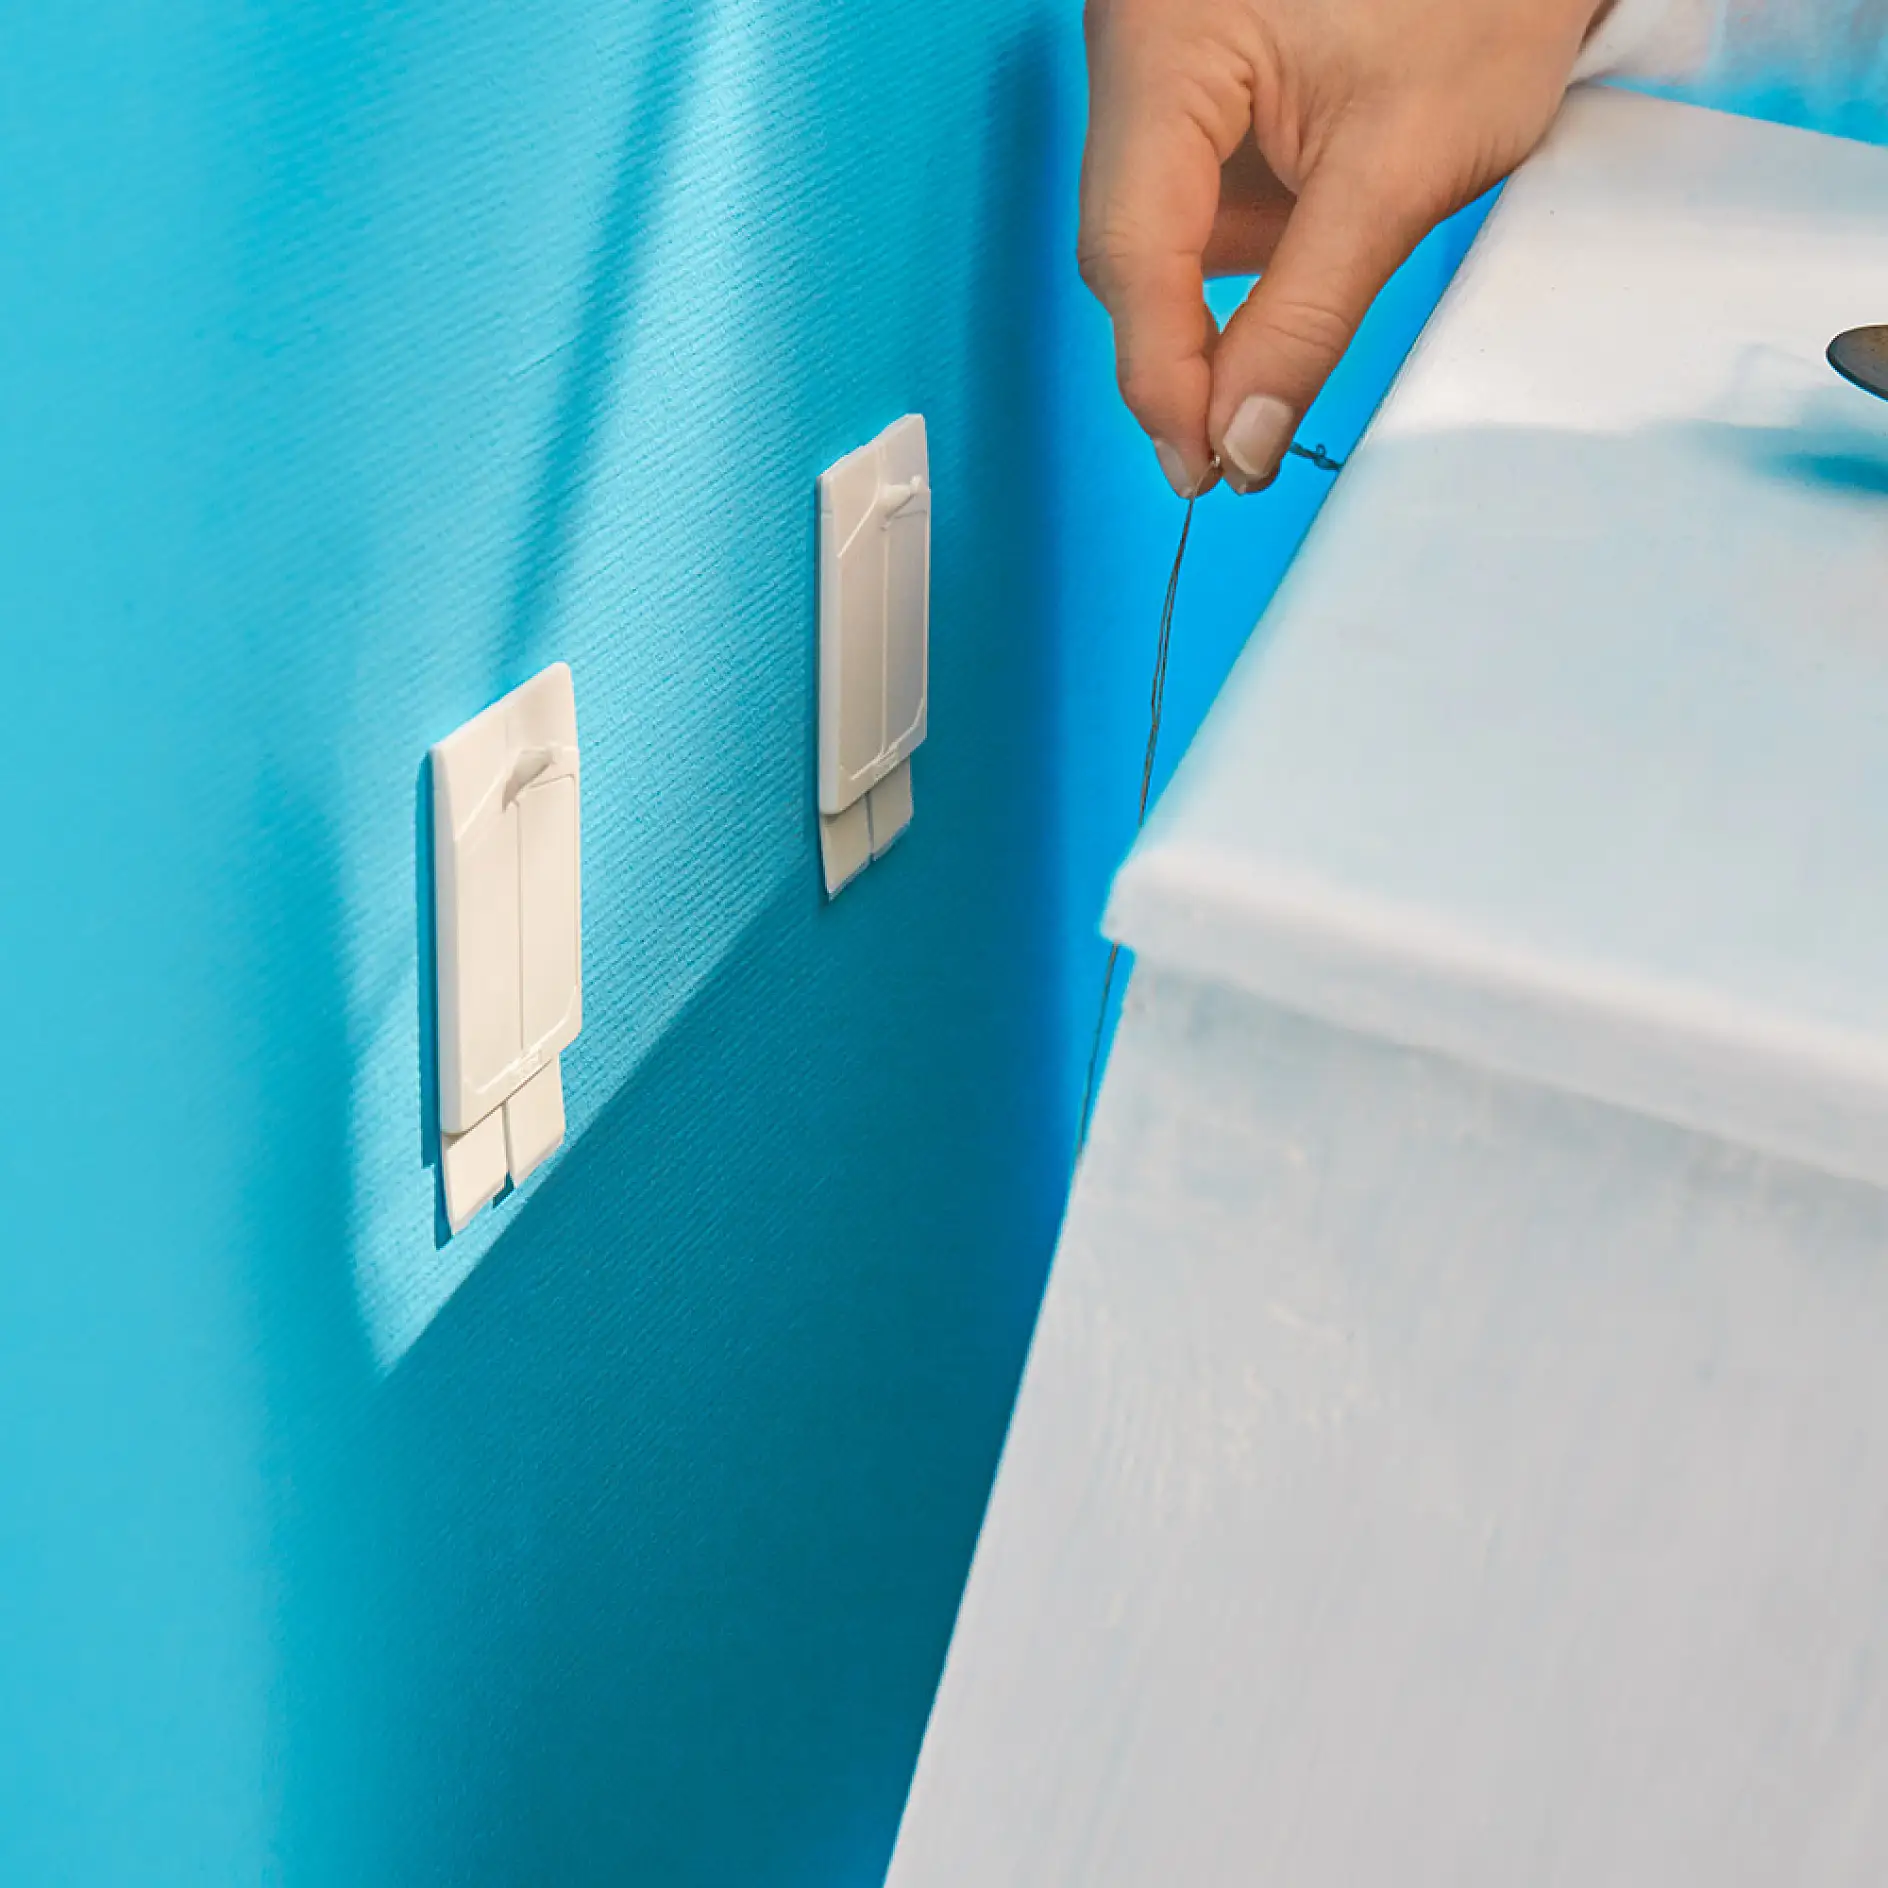 使用tesa®墙纸与石膏用可调无痕挂钉（2公斤）来挂起手工制作床头柜